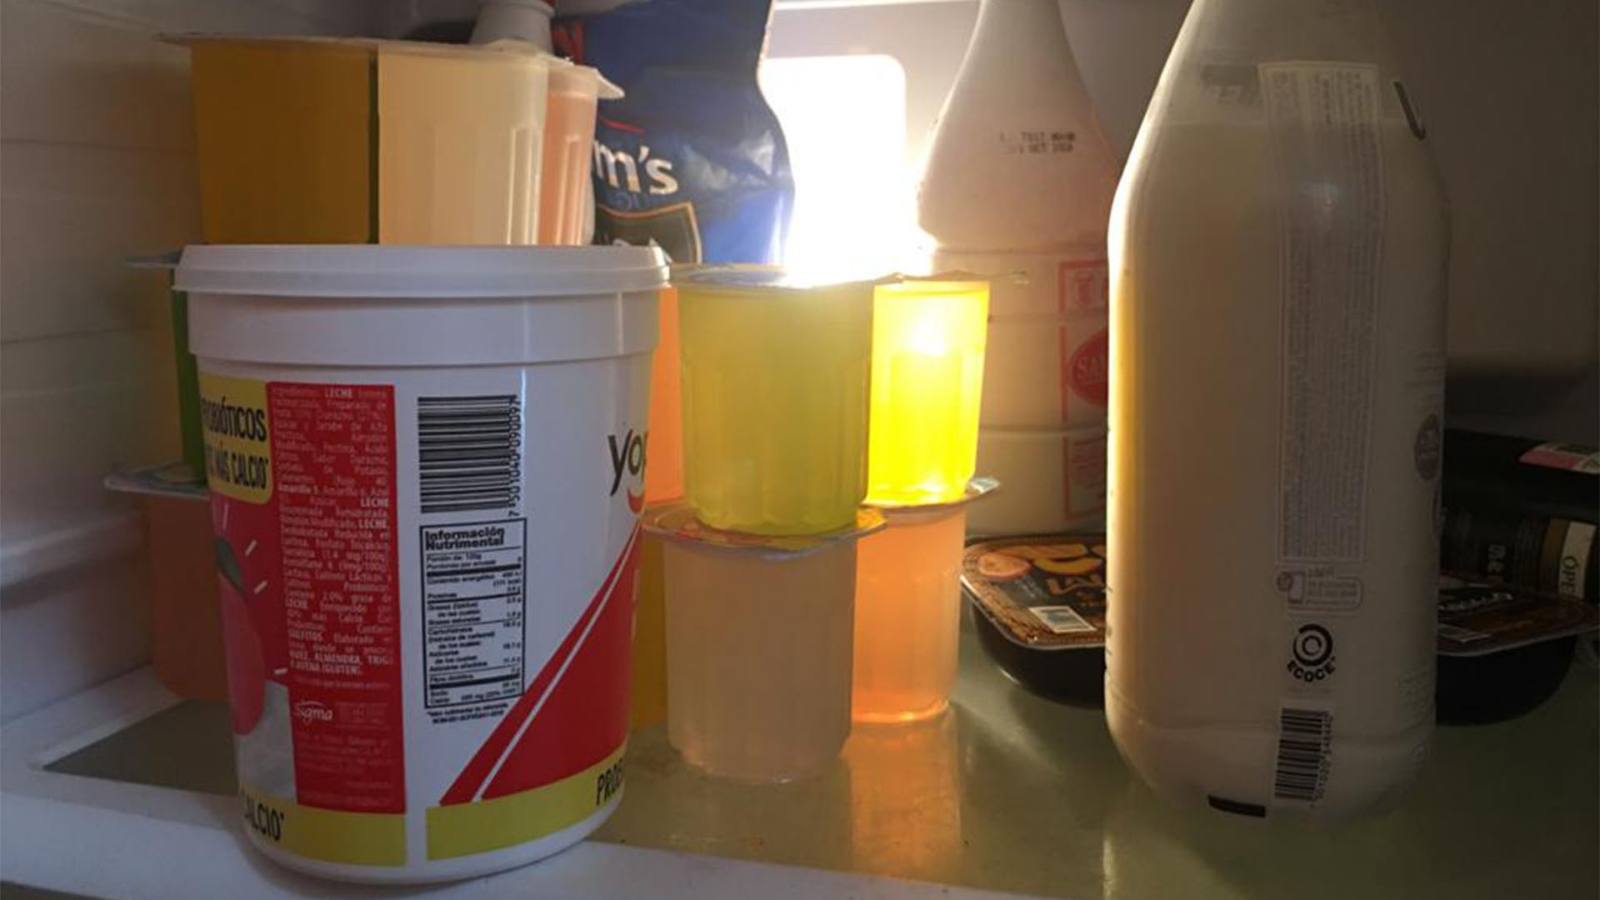 Botes de yogurt: ¿Qué riesgos se corren al guardar comida en estos recipientes?